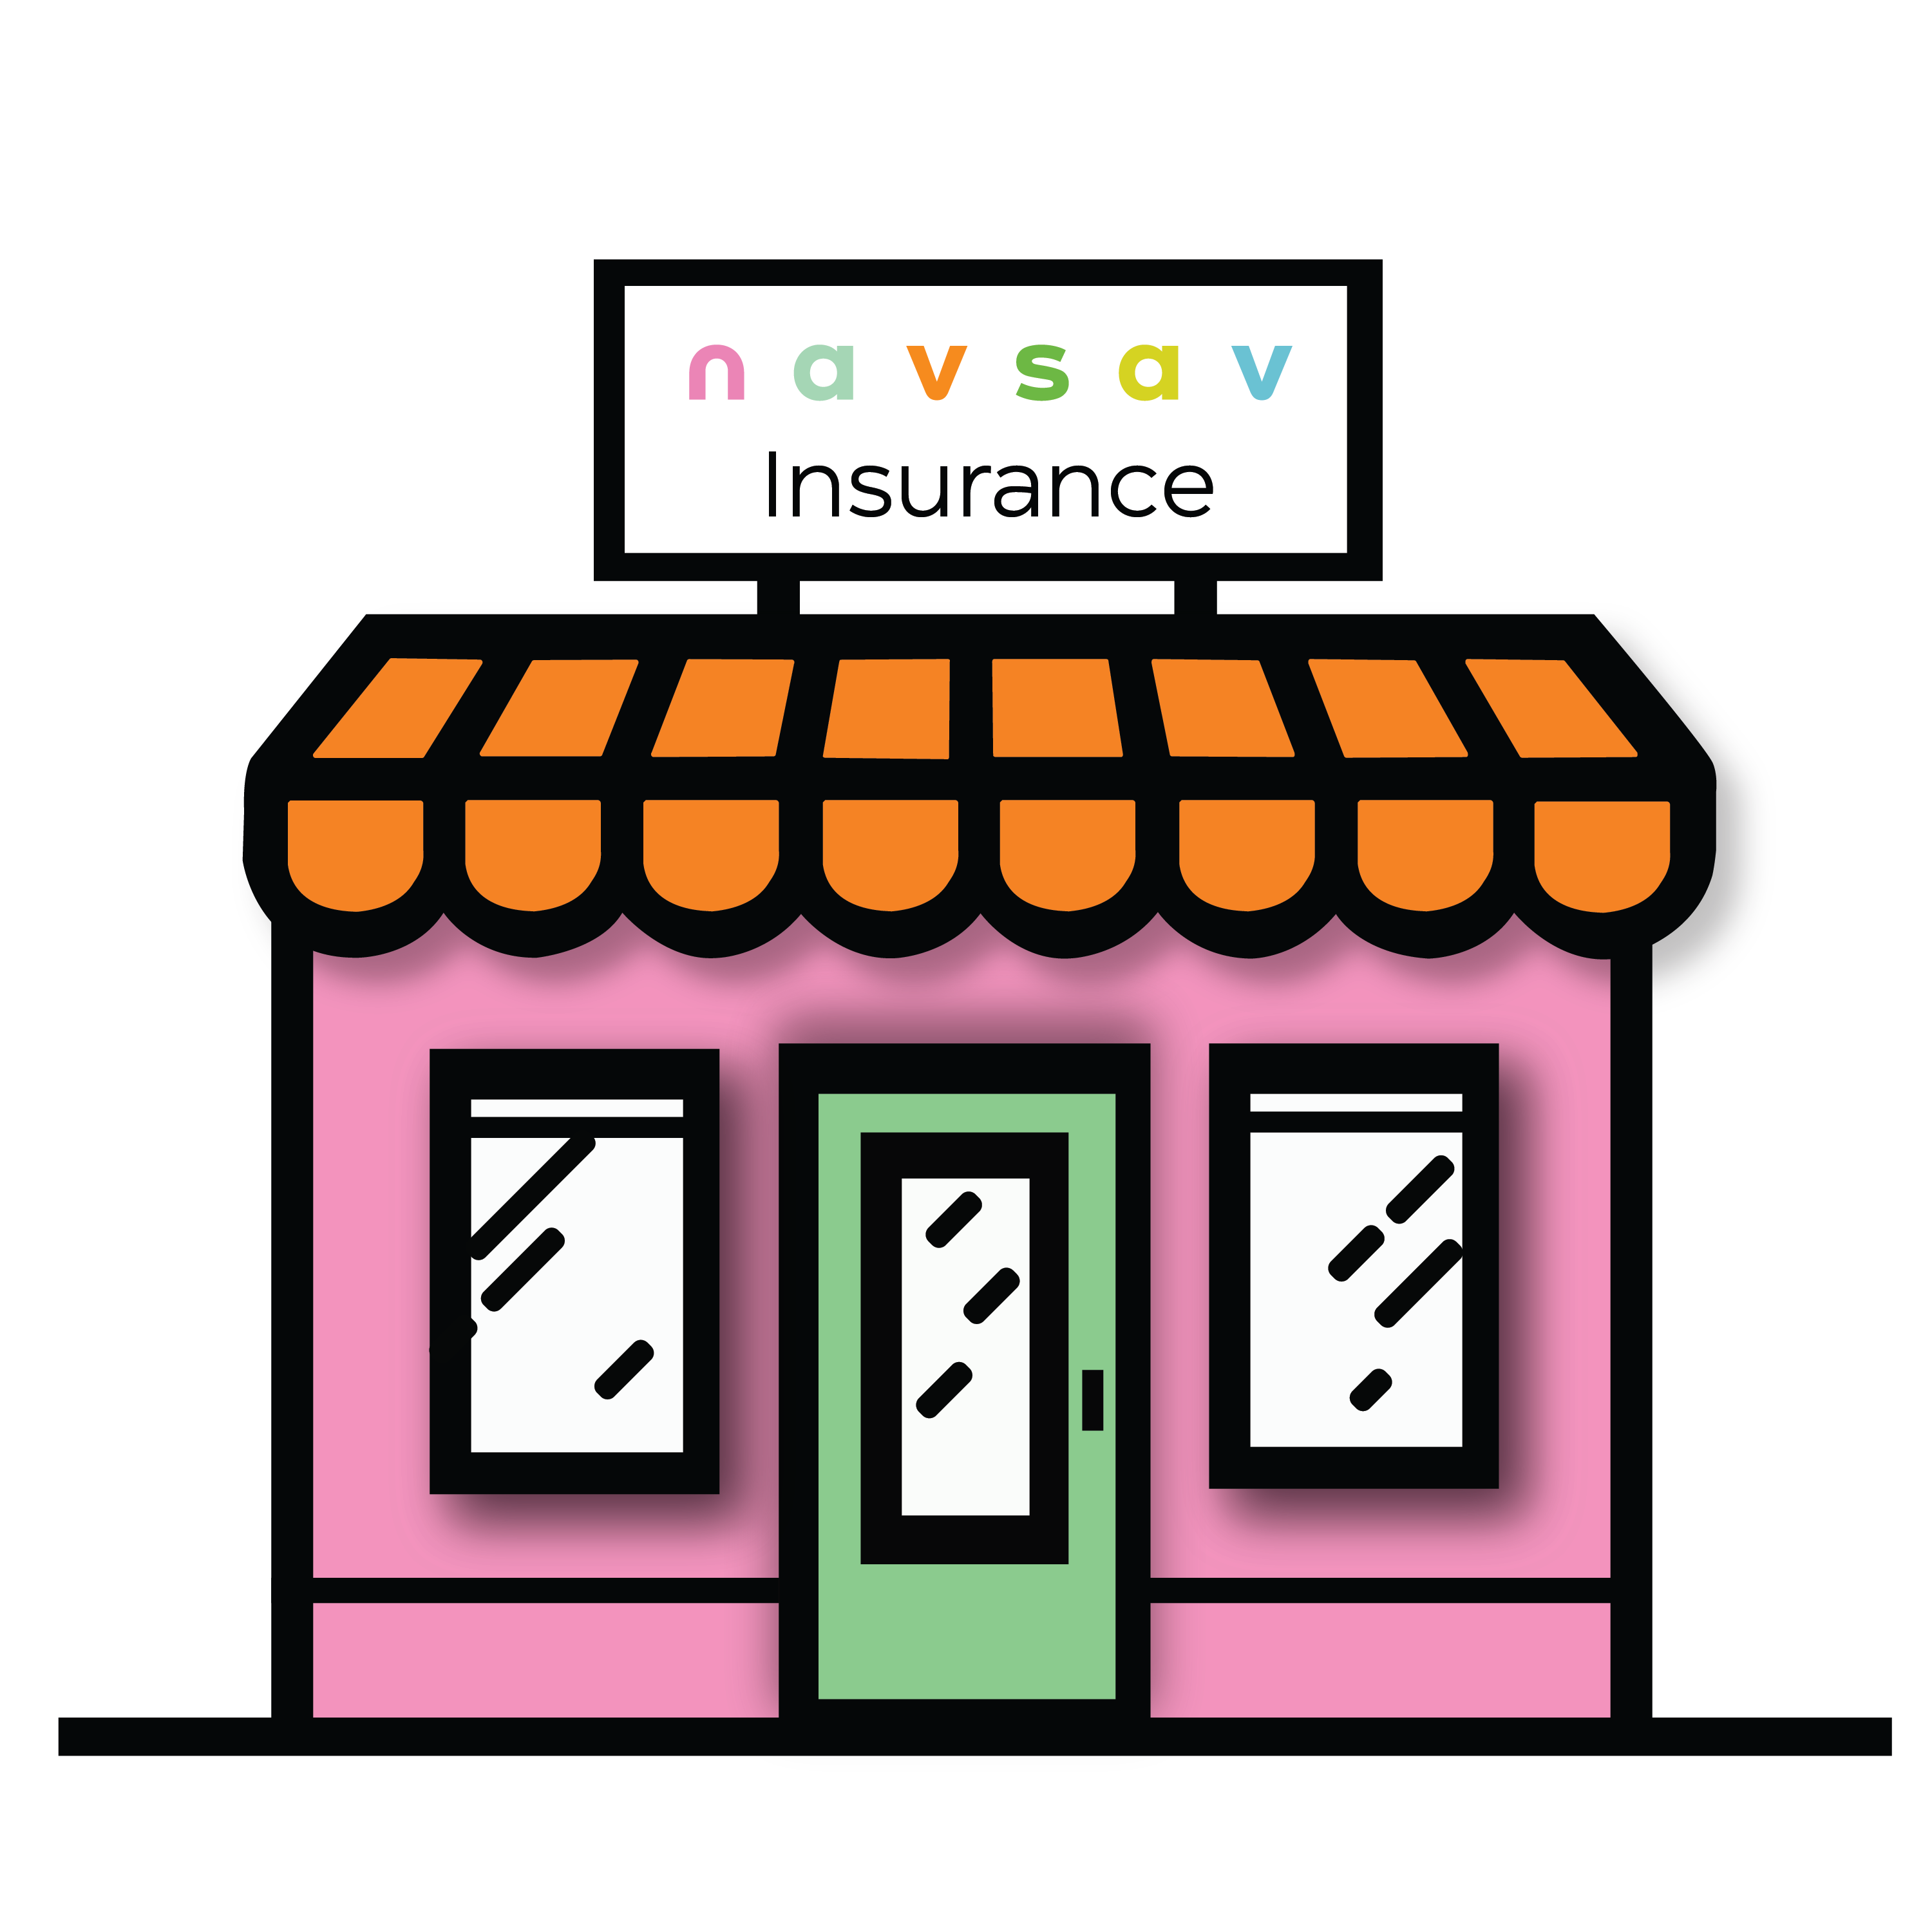 Image 2 | NavSav Insurance - Grand Ledge